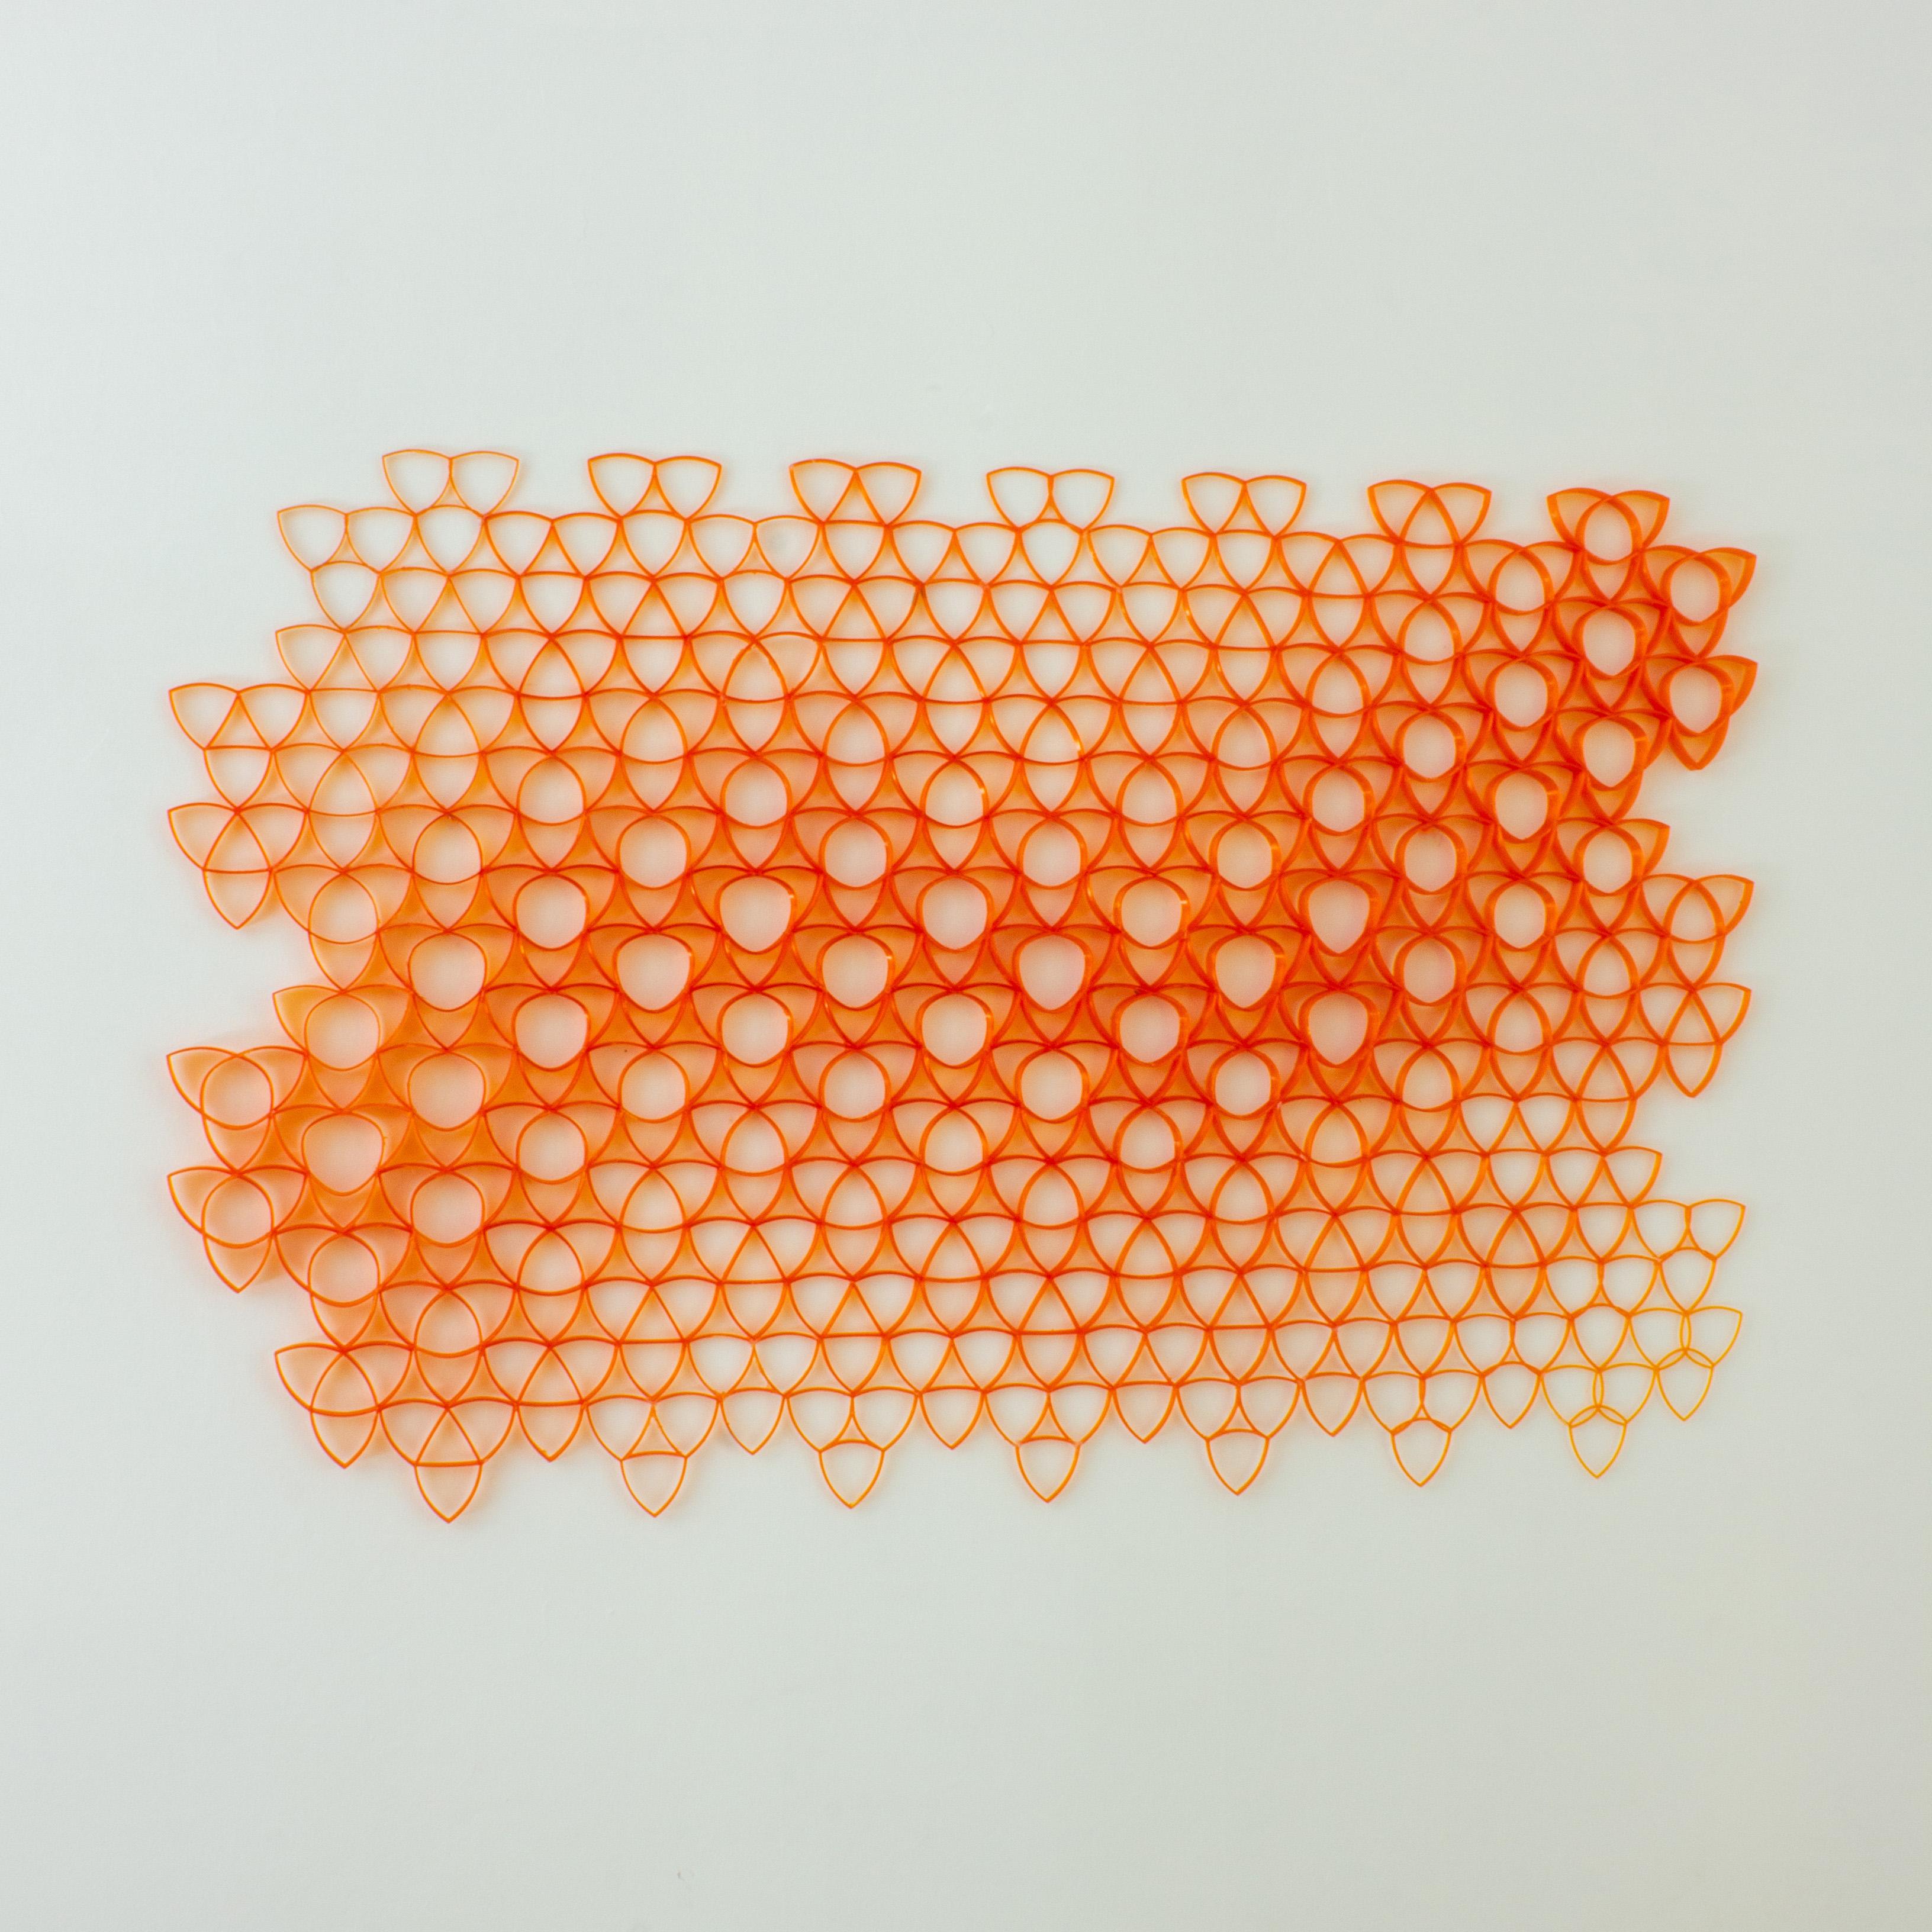 Parametrisches Wandkunstwerk, hergestellt aus über 100 PET-Flaschen. 120 x 90 cm. (47 in x 35 in). Das Design folgt einem dreieckigen geometrischen Muster, das sich auf seinem Weg durch eine Kurve proportional verändert. Das Muster wird in 3D